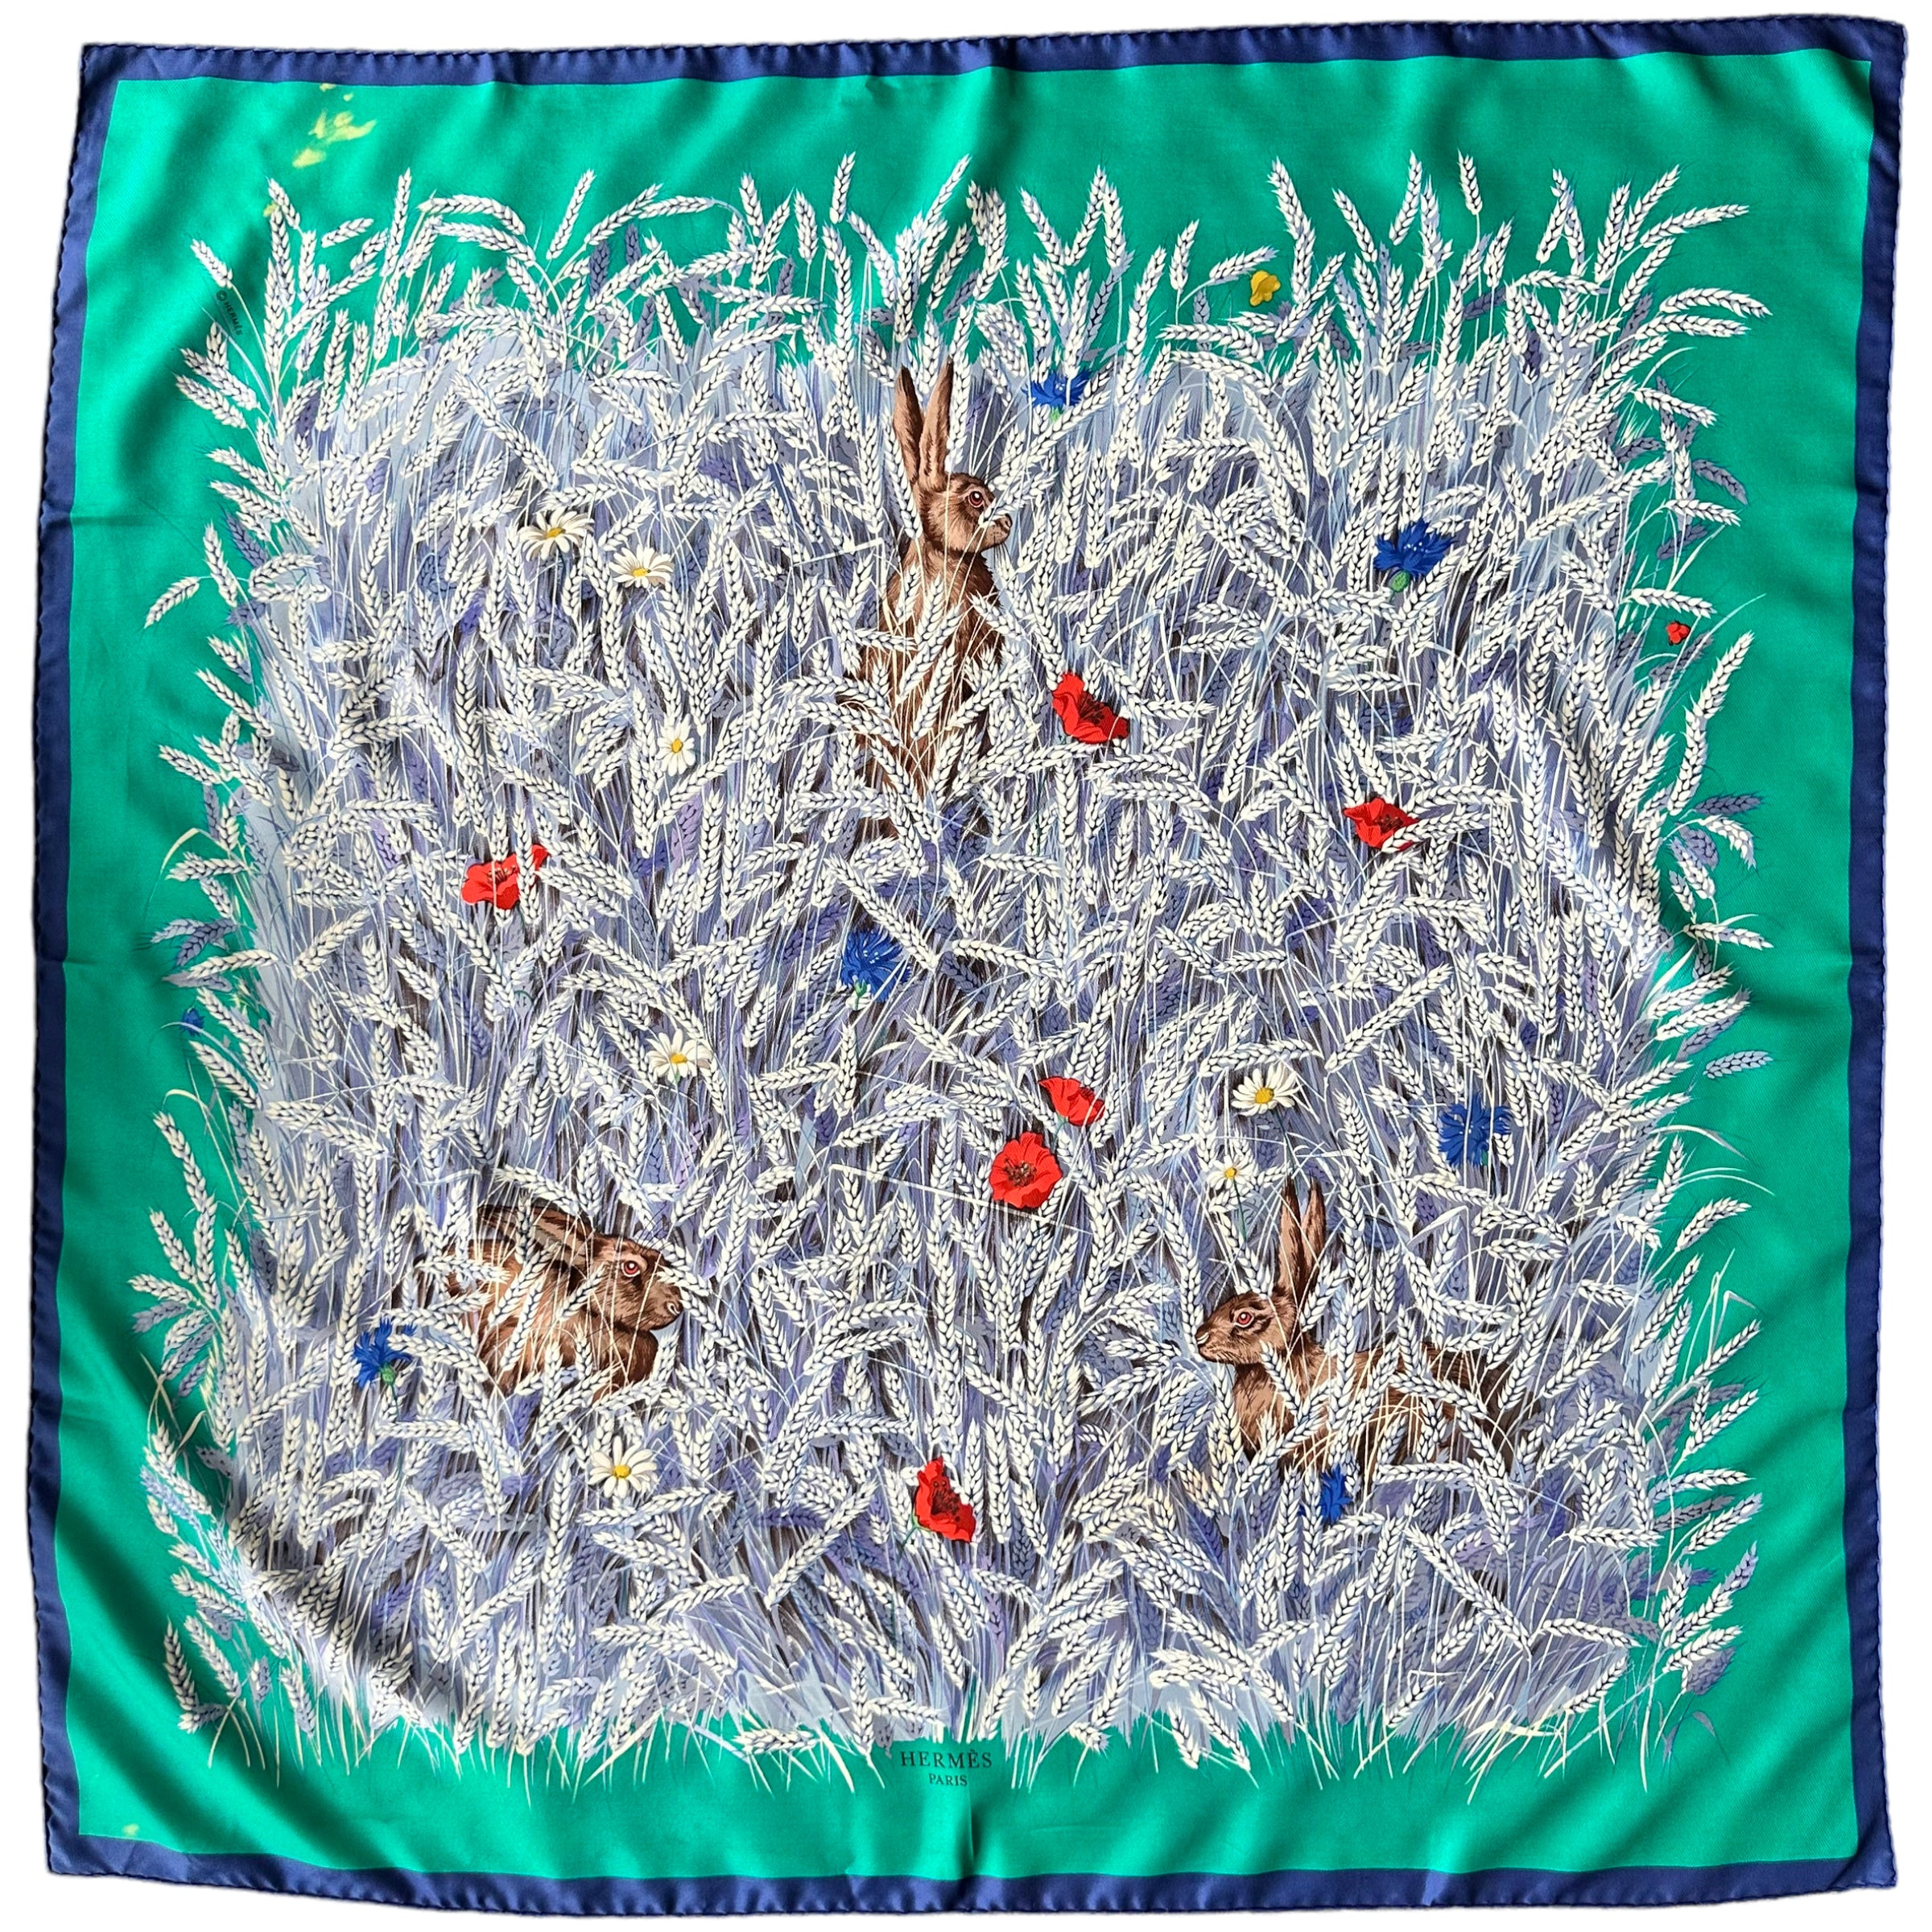 vue d'ensemble du foulard trois lapins dans les blés entourage vert et bleu